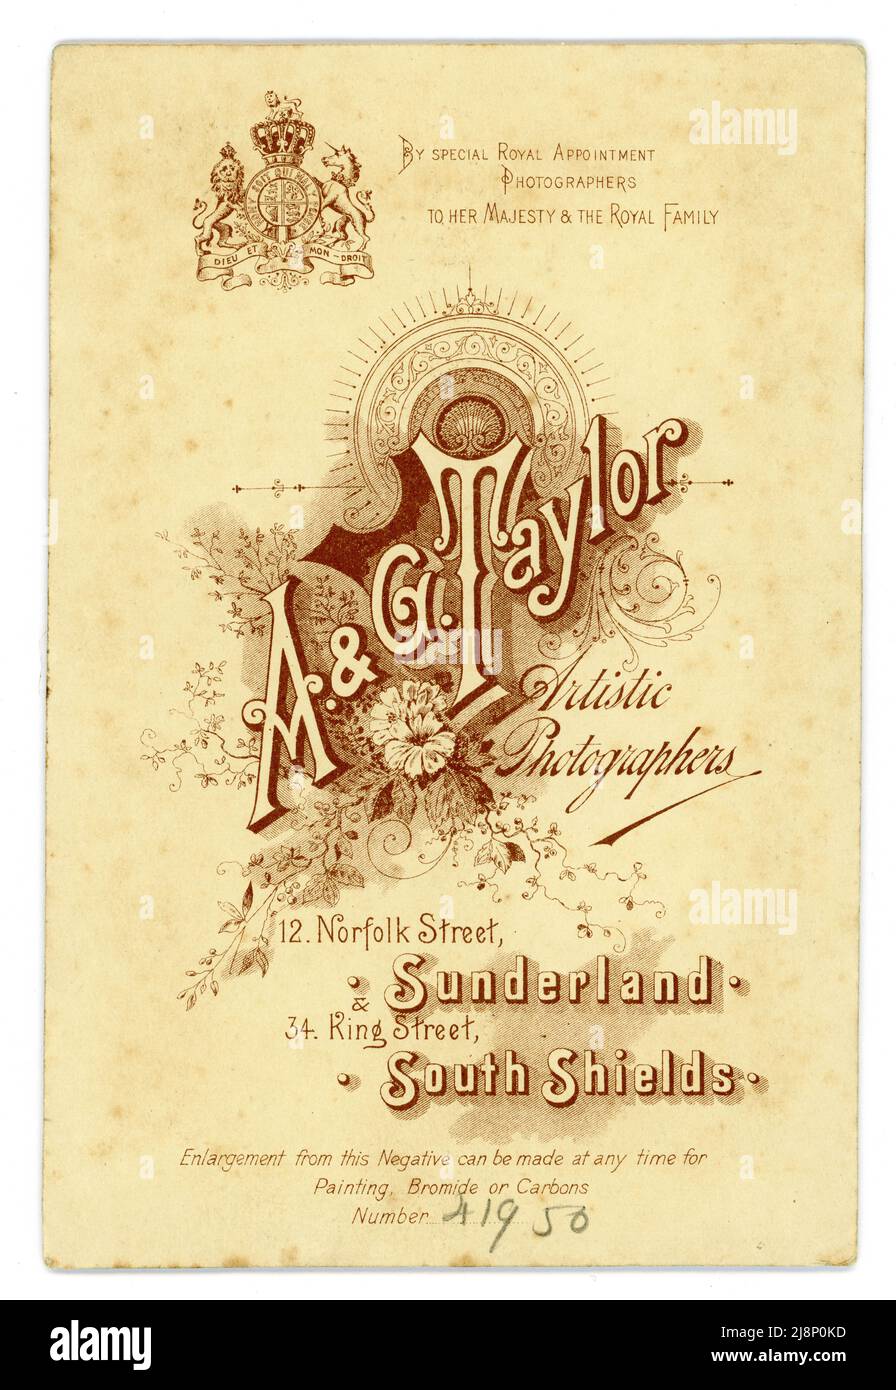 Carte originale de l'armoire victorienne du studio A.G. Taylor, studios de Sunderland & South Shields, nord de l'Angleterre, Royaume-Uni Circa 1895. Banque D'Images